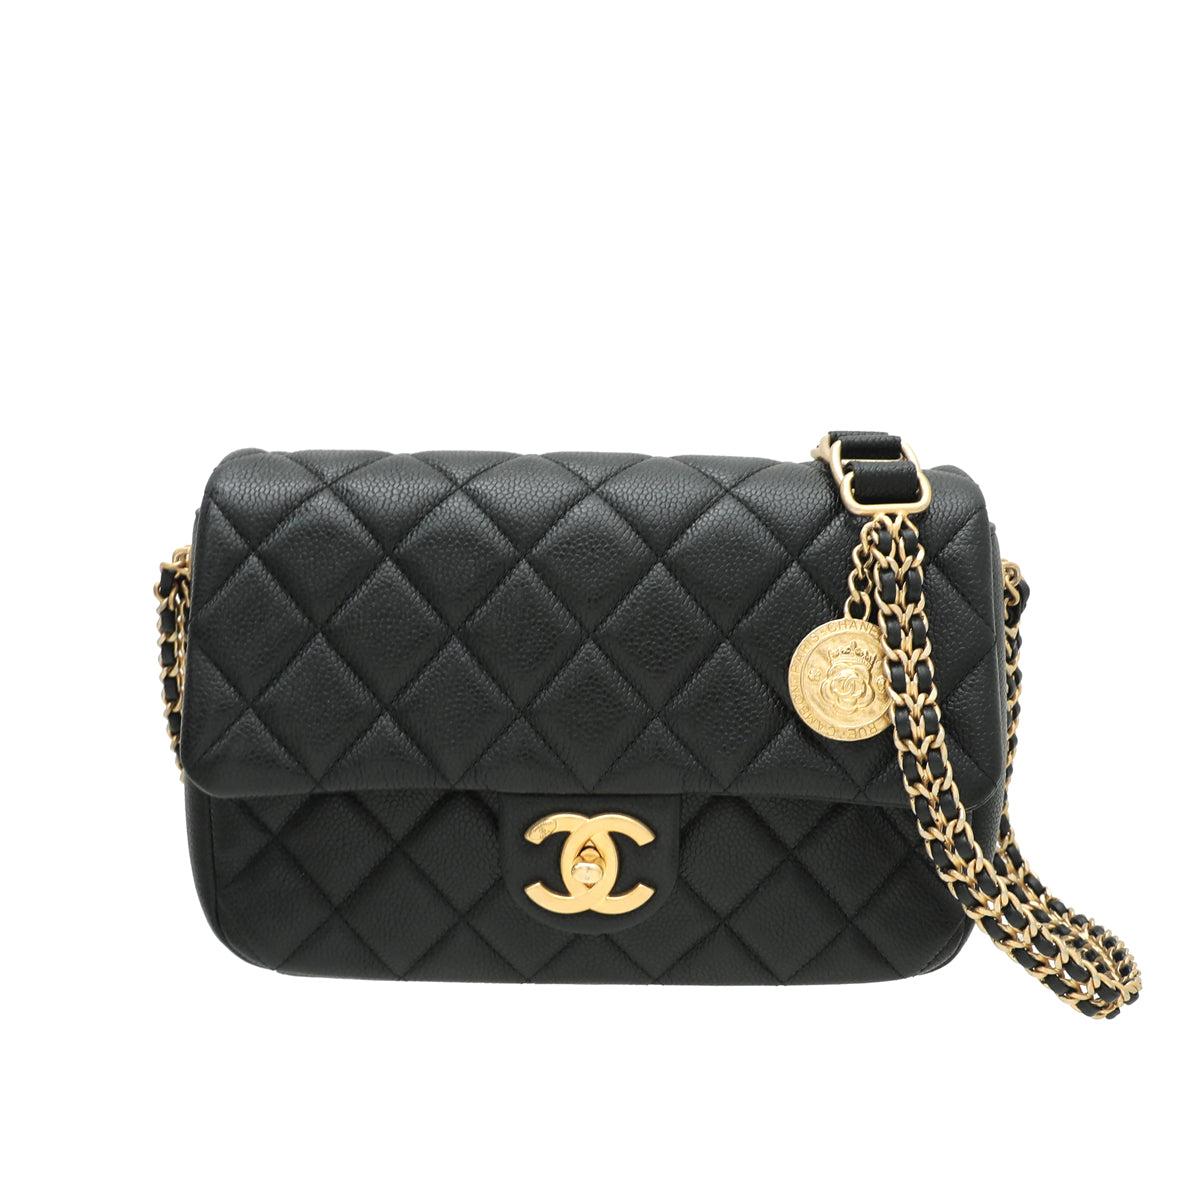 Chanel Black Medallion Flap Bag